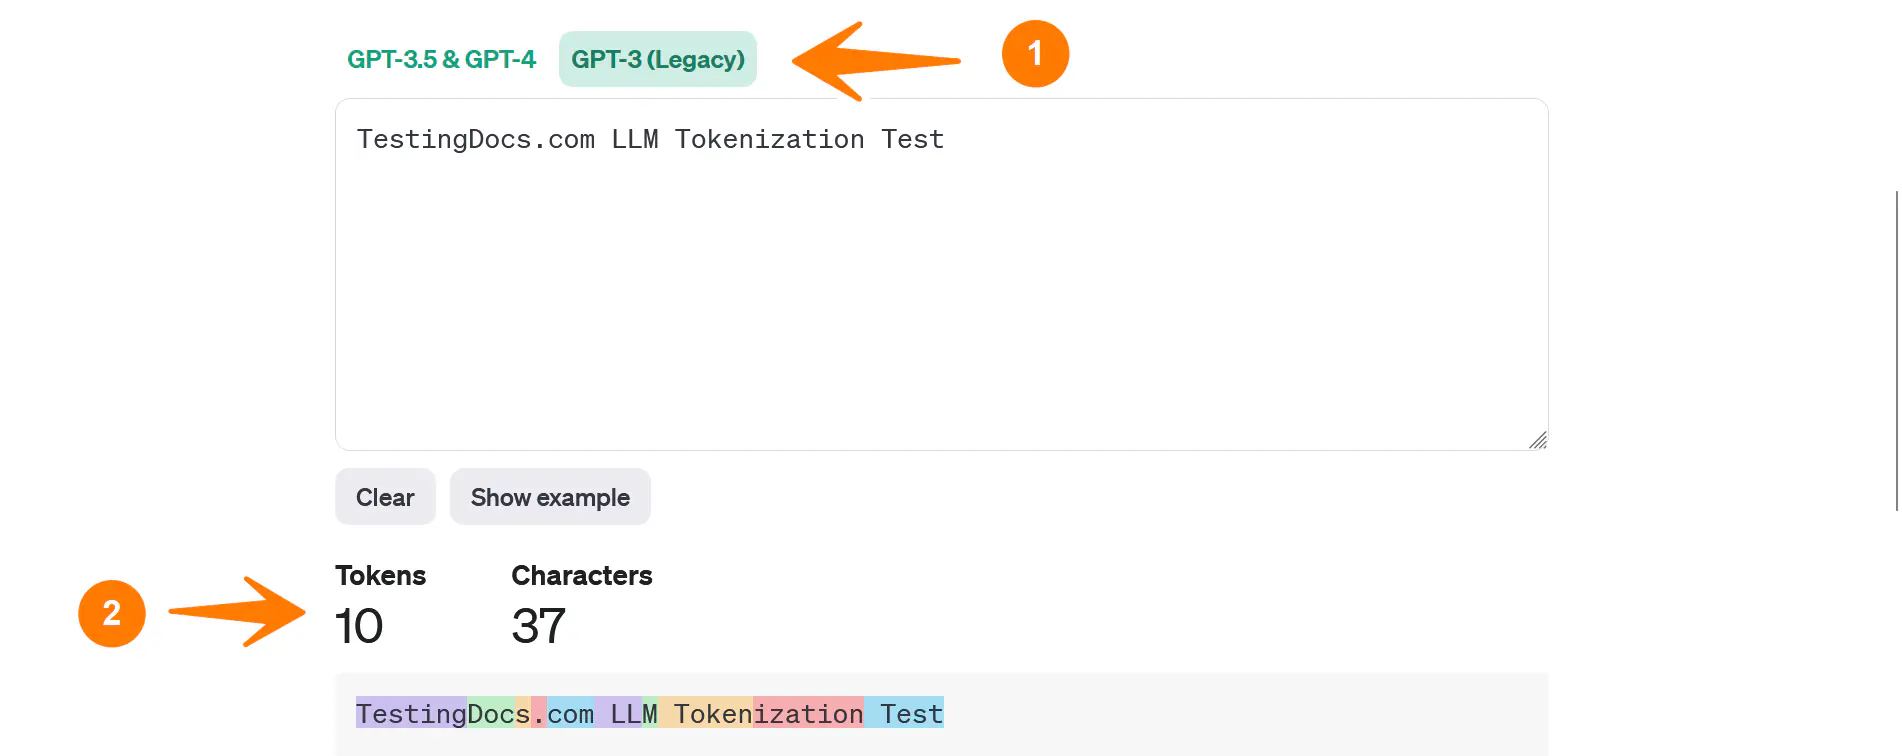 LLM Tokenization Test GPT-3